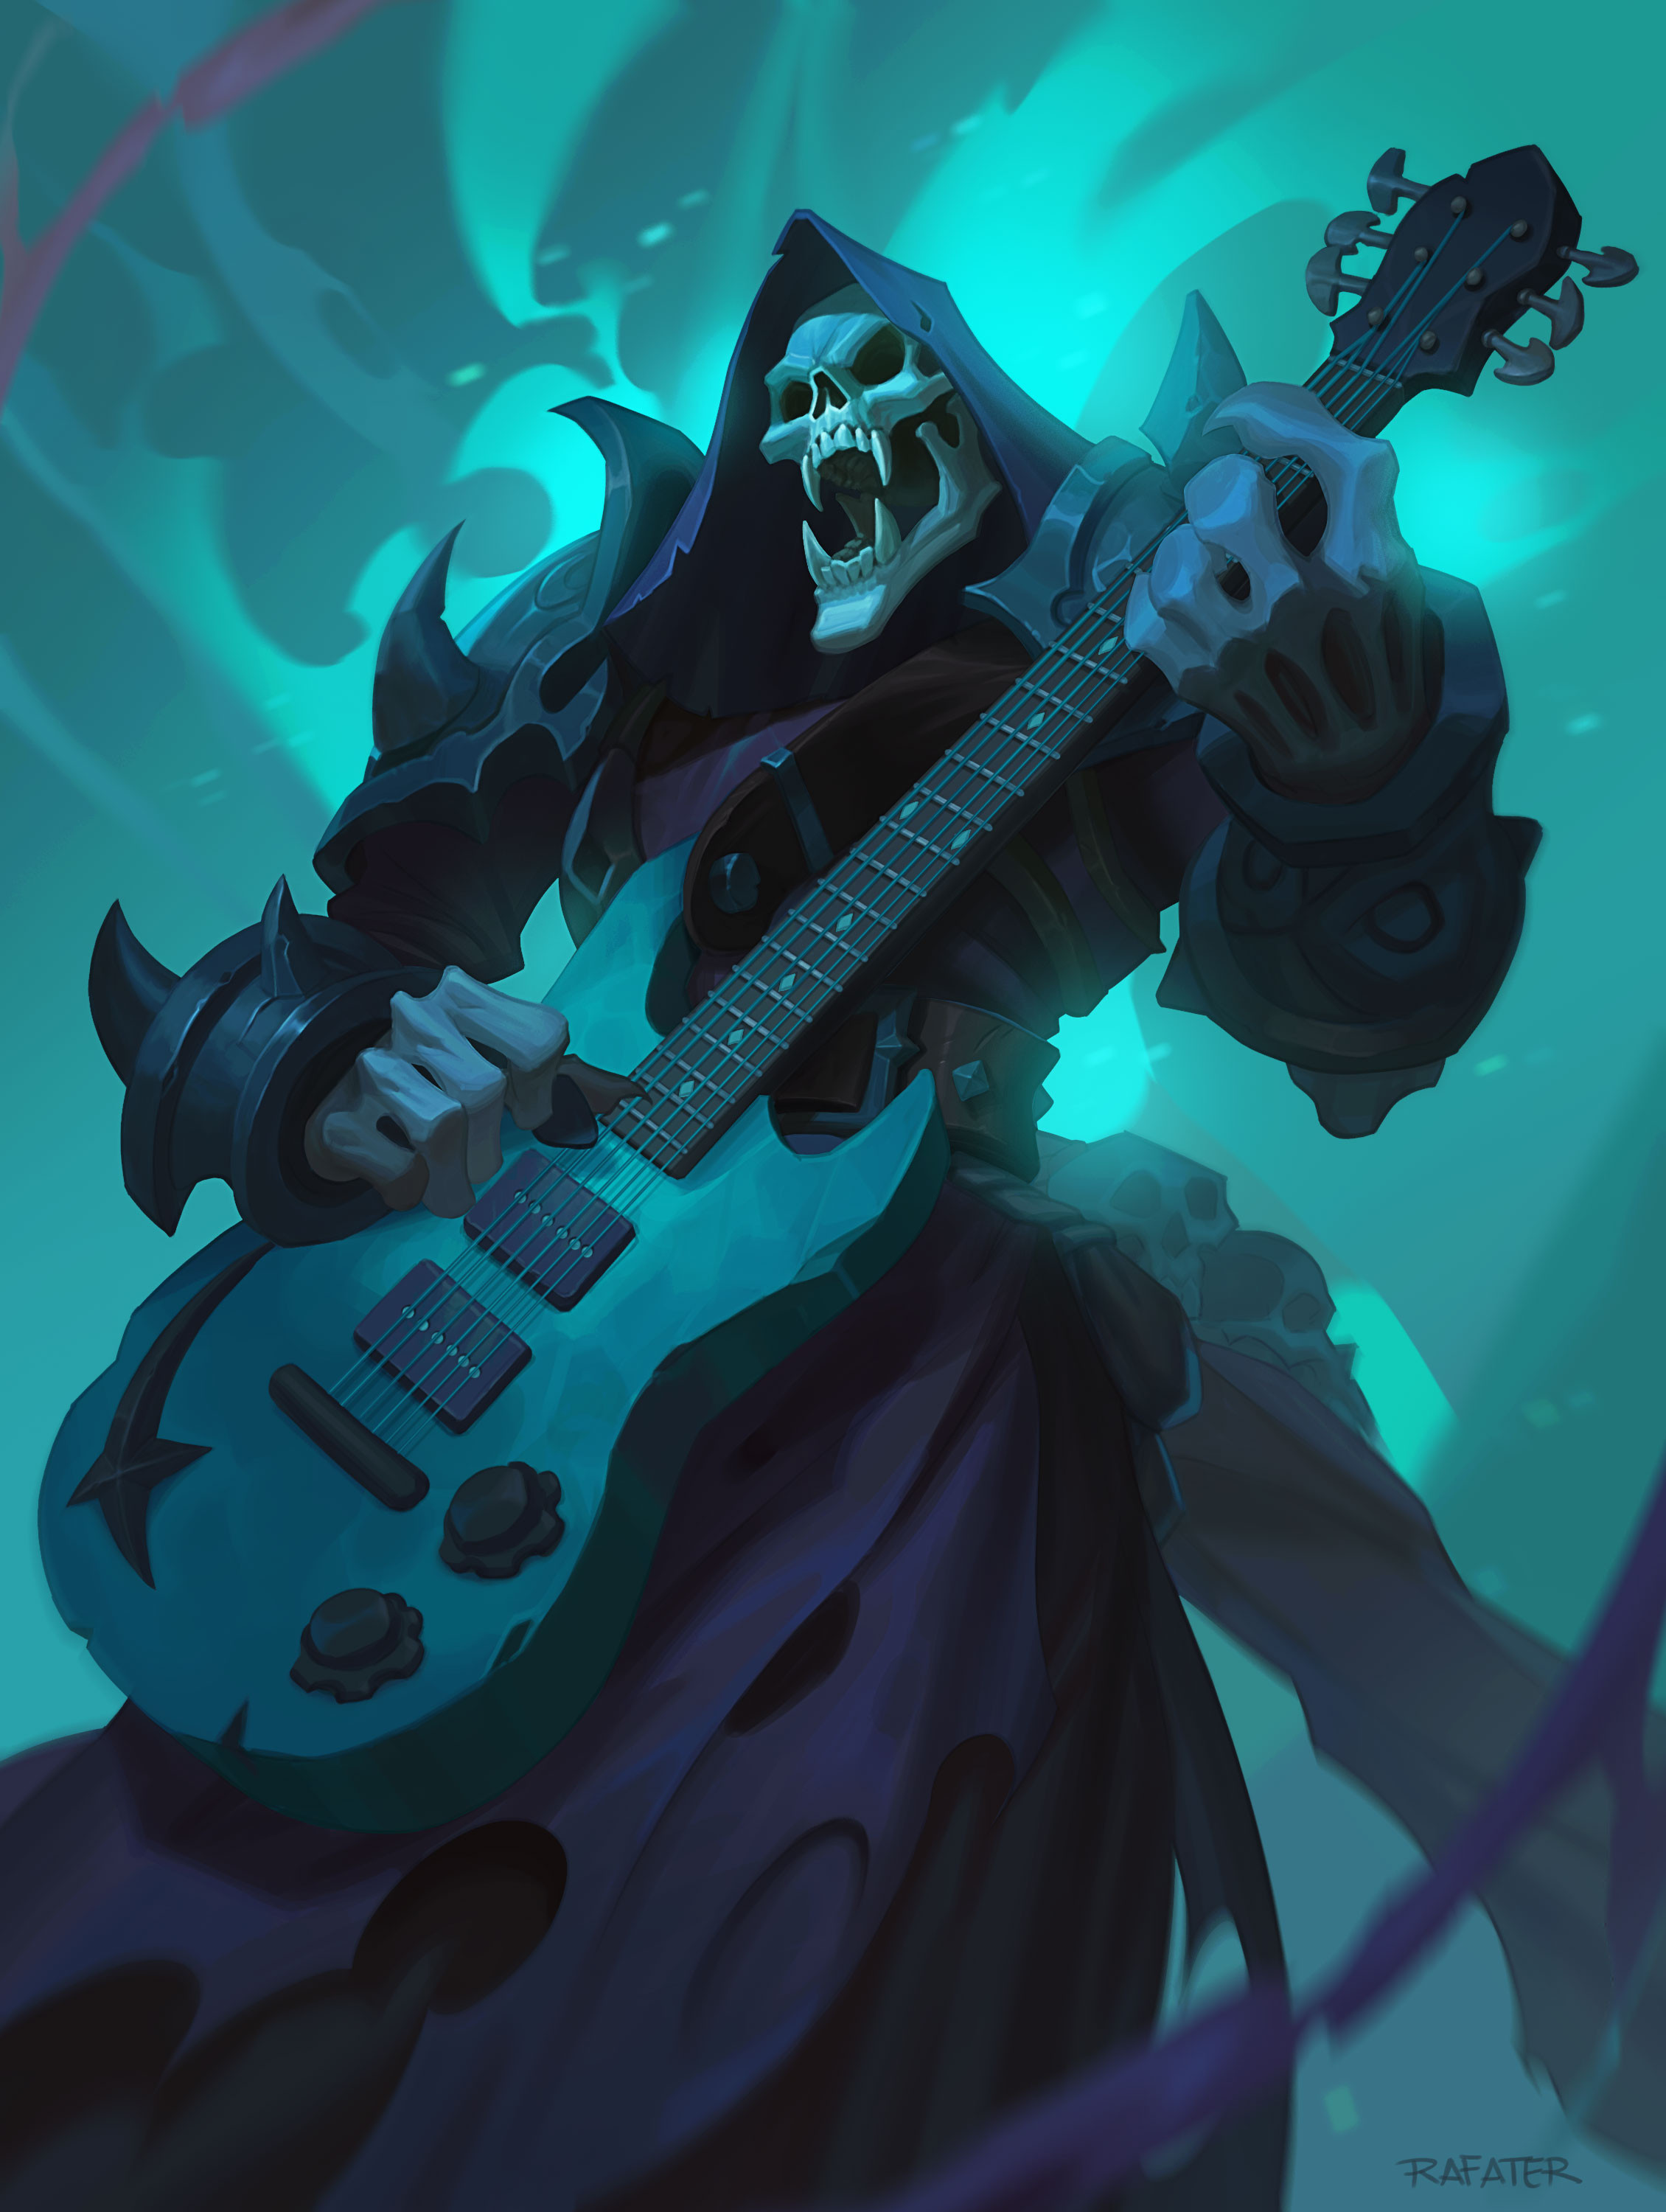 General 2260x3000 guitar Grim Reaper music skull fangs drawing portrait display musical instrument standing signature